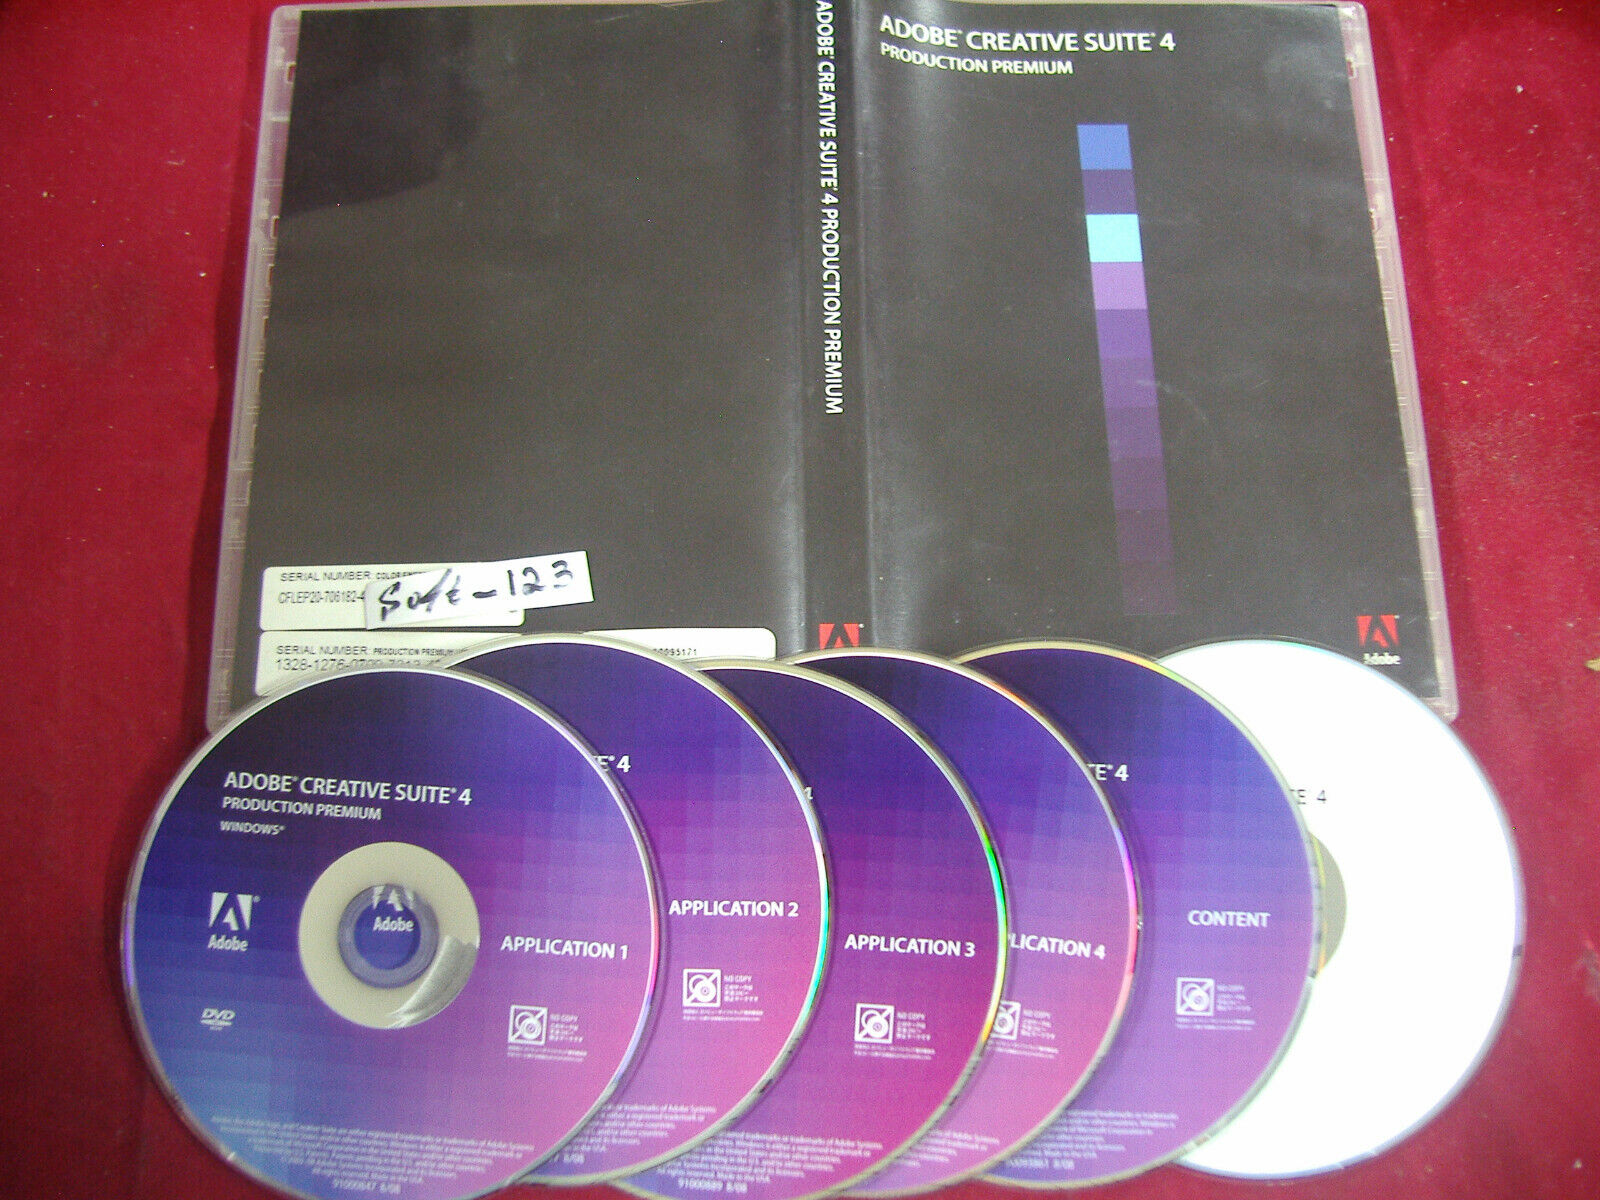 Adobe Creative Suite 4 Production Premium For Windows Full Retai DVD Version